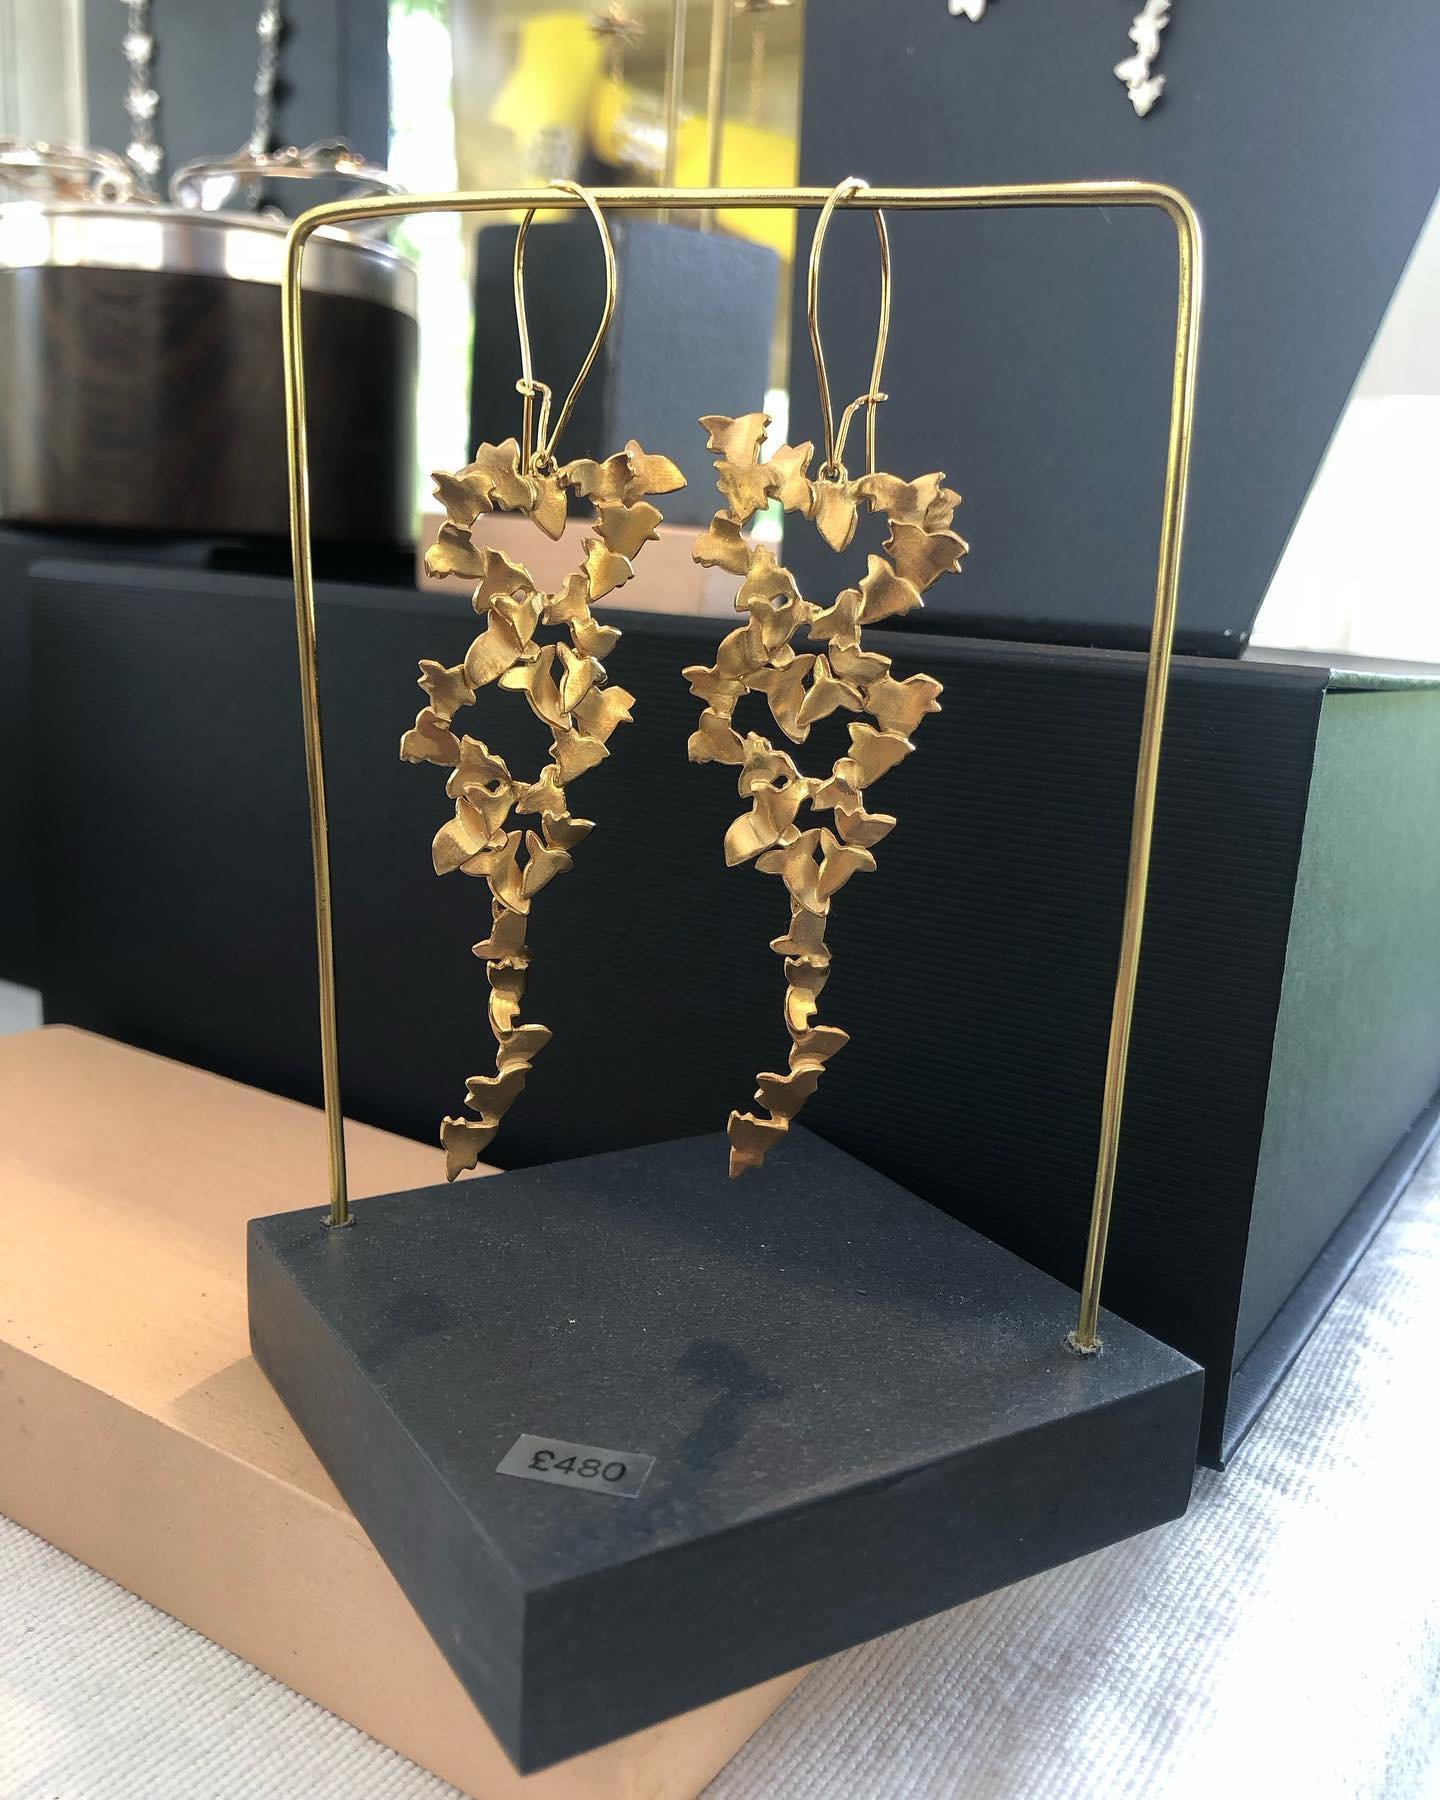 Trailing Golden Ivy earrings @craftinfocus fair.
Open all bank holiday weekend 9-6 (10-5 Monday).

#ivy #ivyearrings #ivyjewellery #statementearrings #rhswisley #goldearrings #trailingivy #fionamcalear#jewellerygram #jewelleryaddict